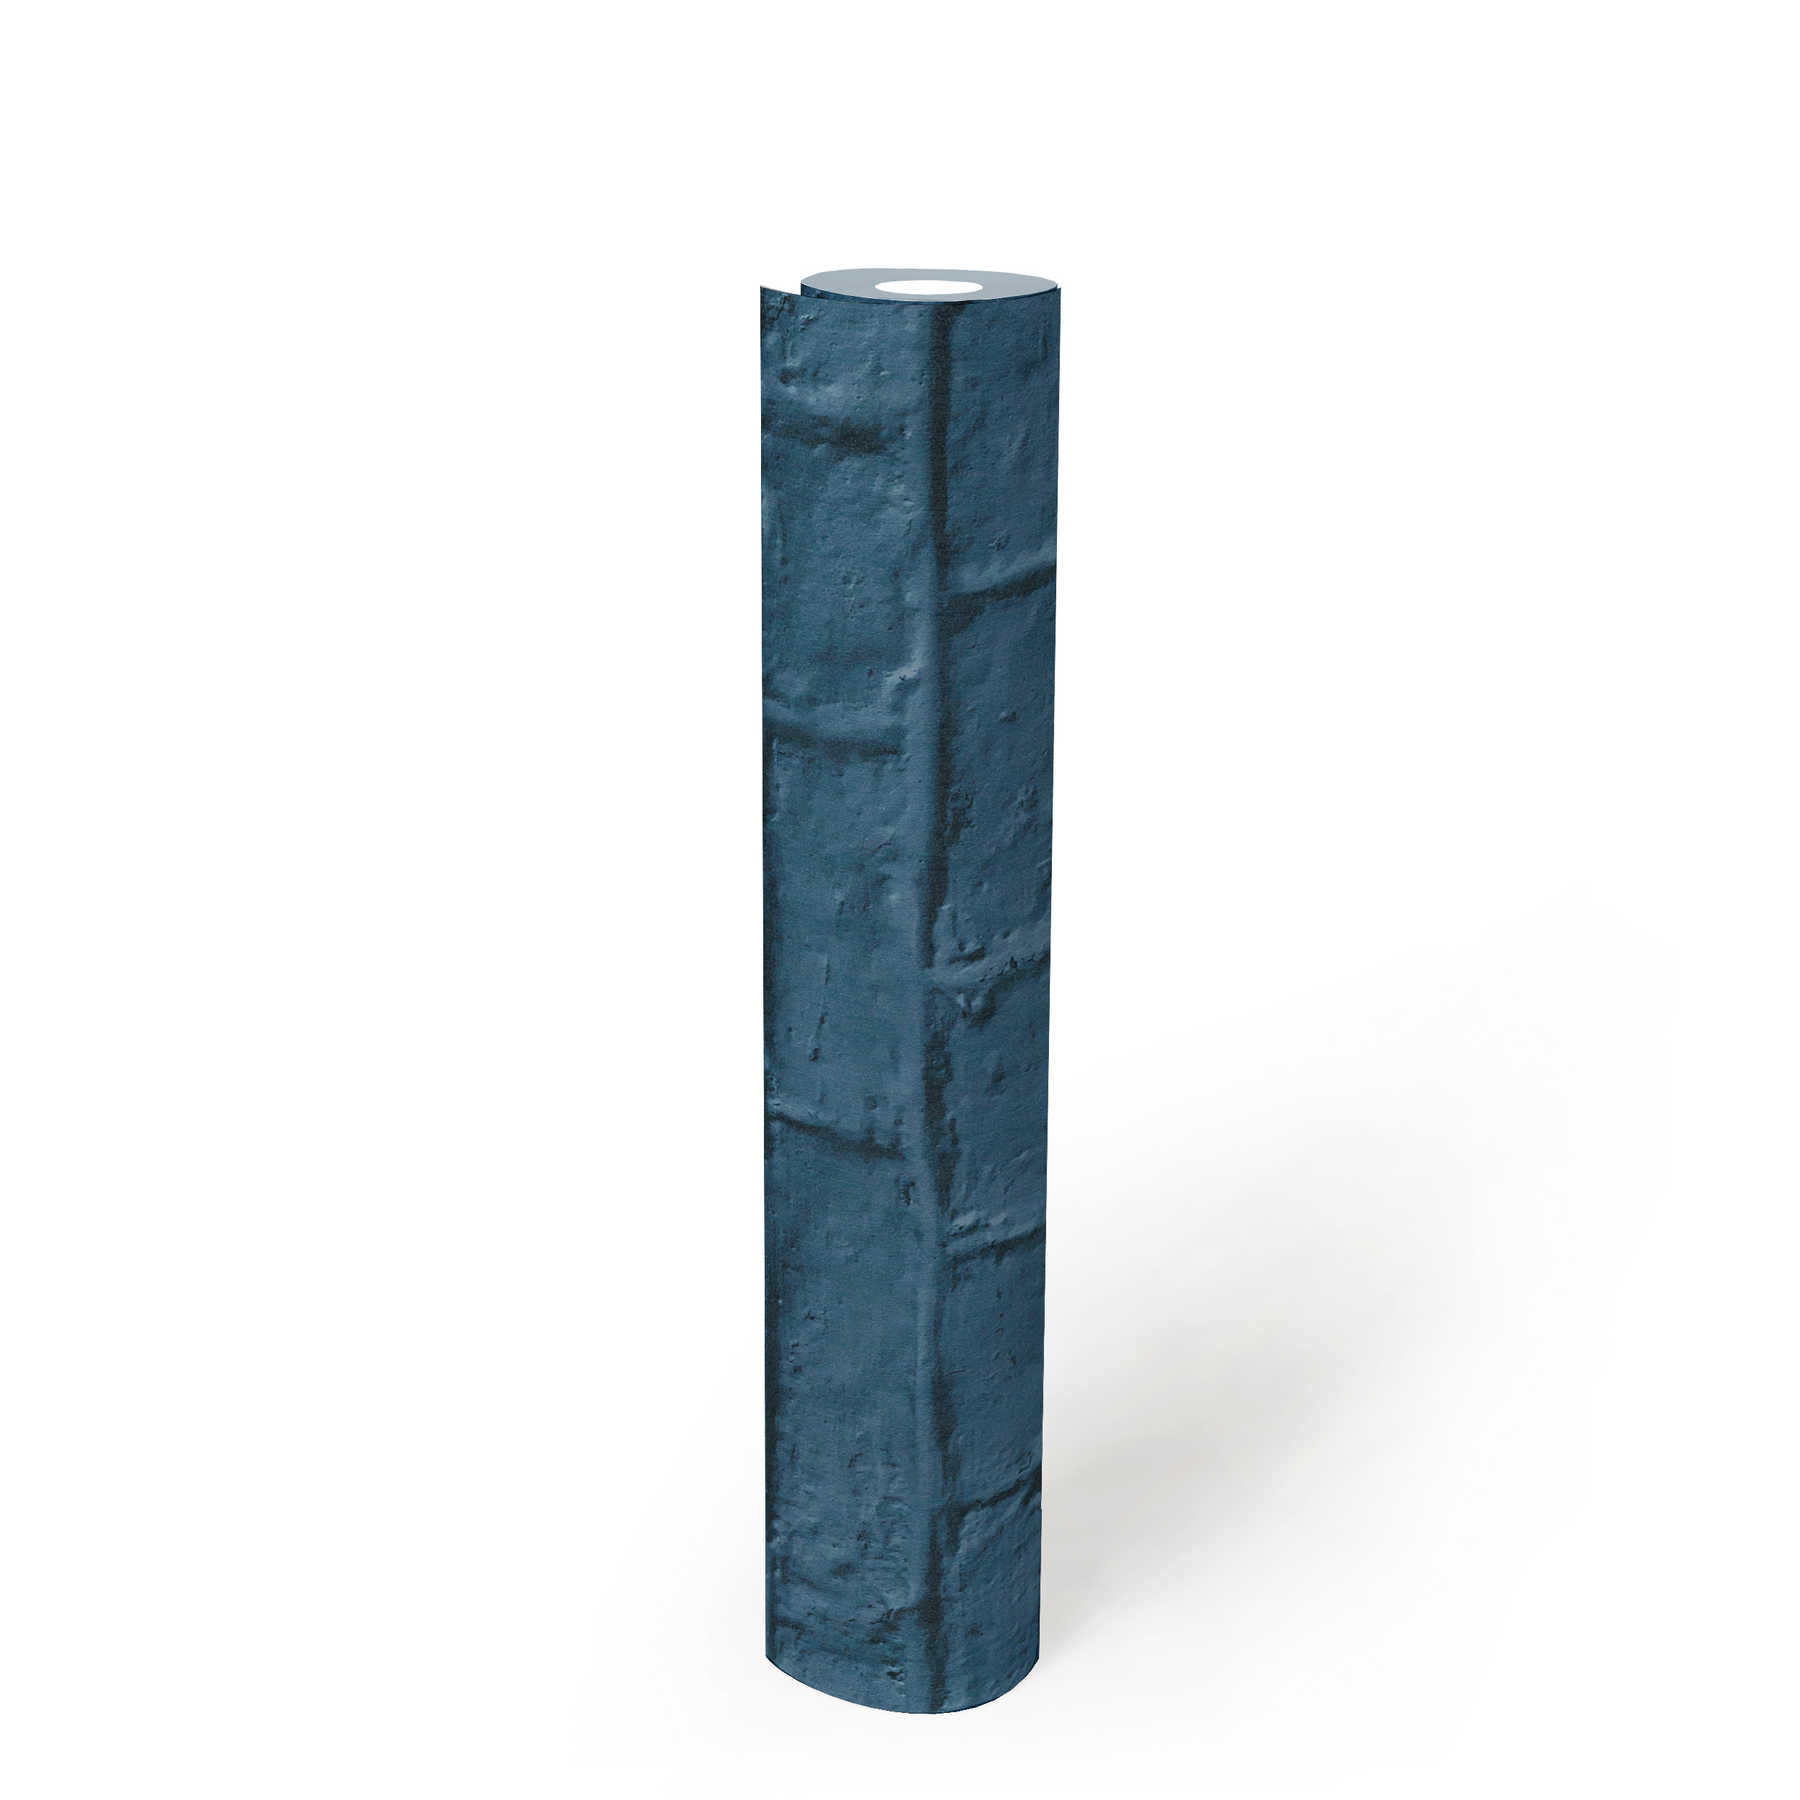             Steintapete in glatter Backsteinoptik – Blau
        